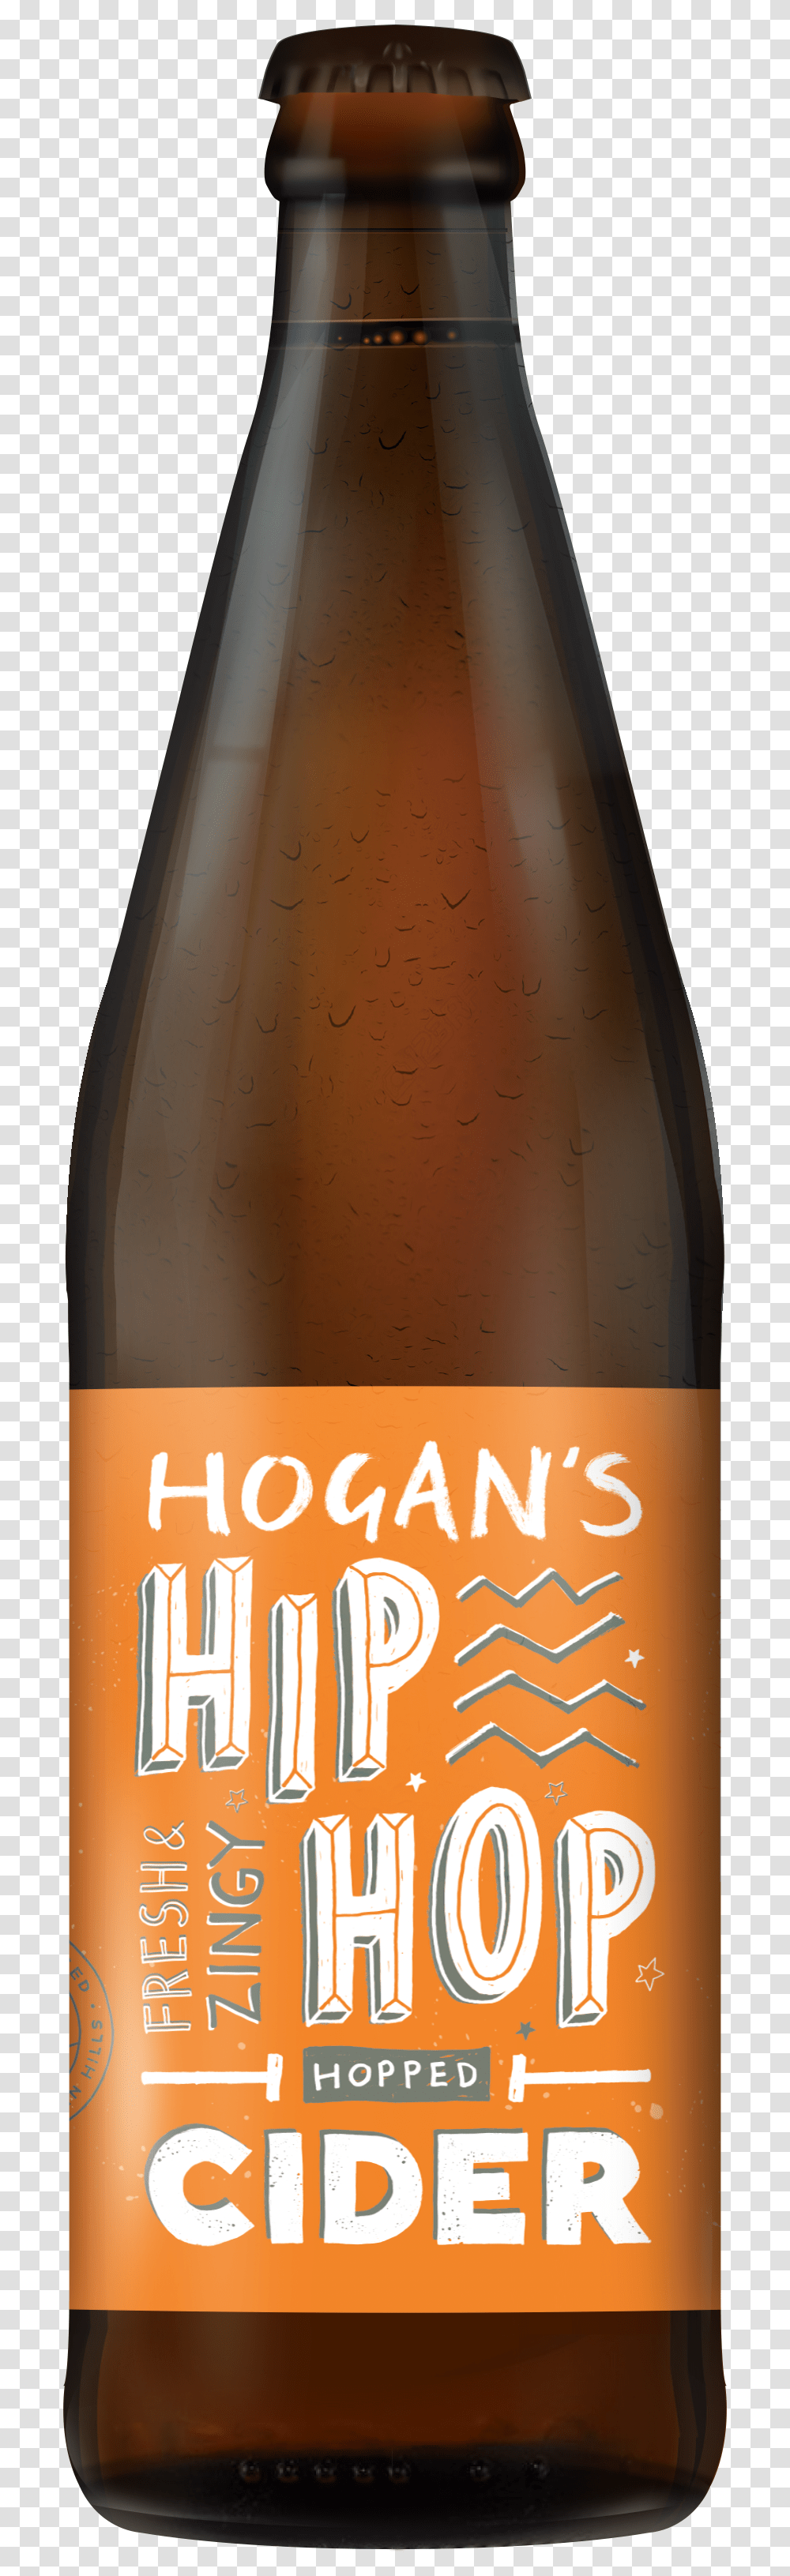 Hiphop Bottle Image Hogans Hip Hop Cider, Beer, Alcohol, Beverage, Drink Transparent Png